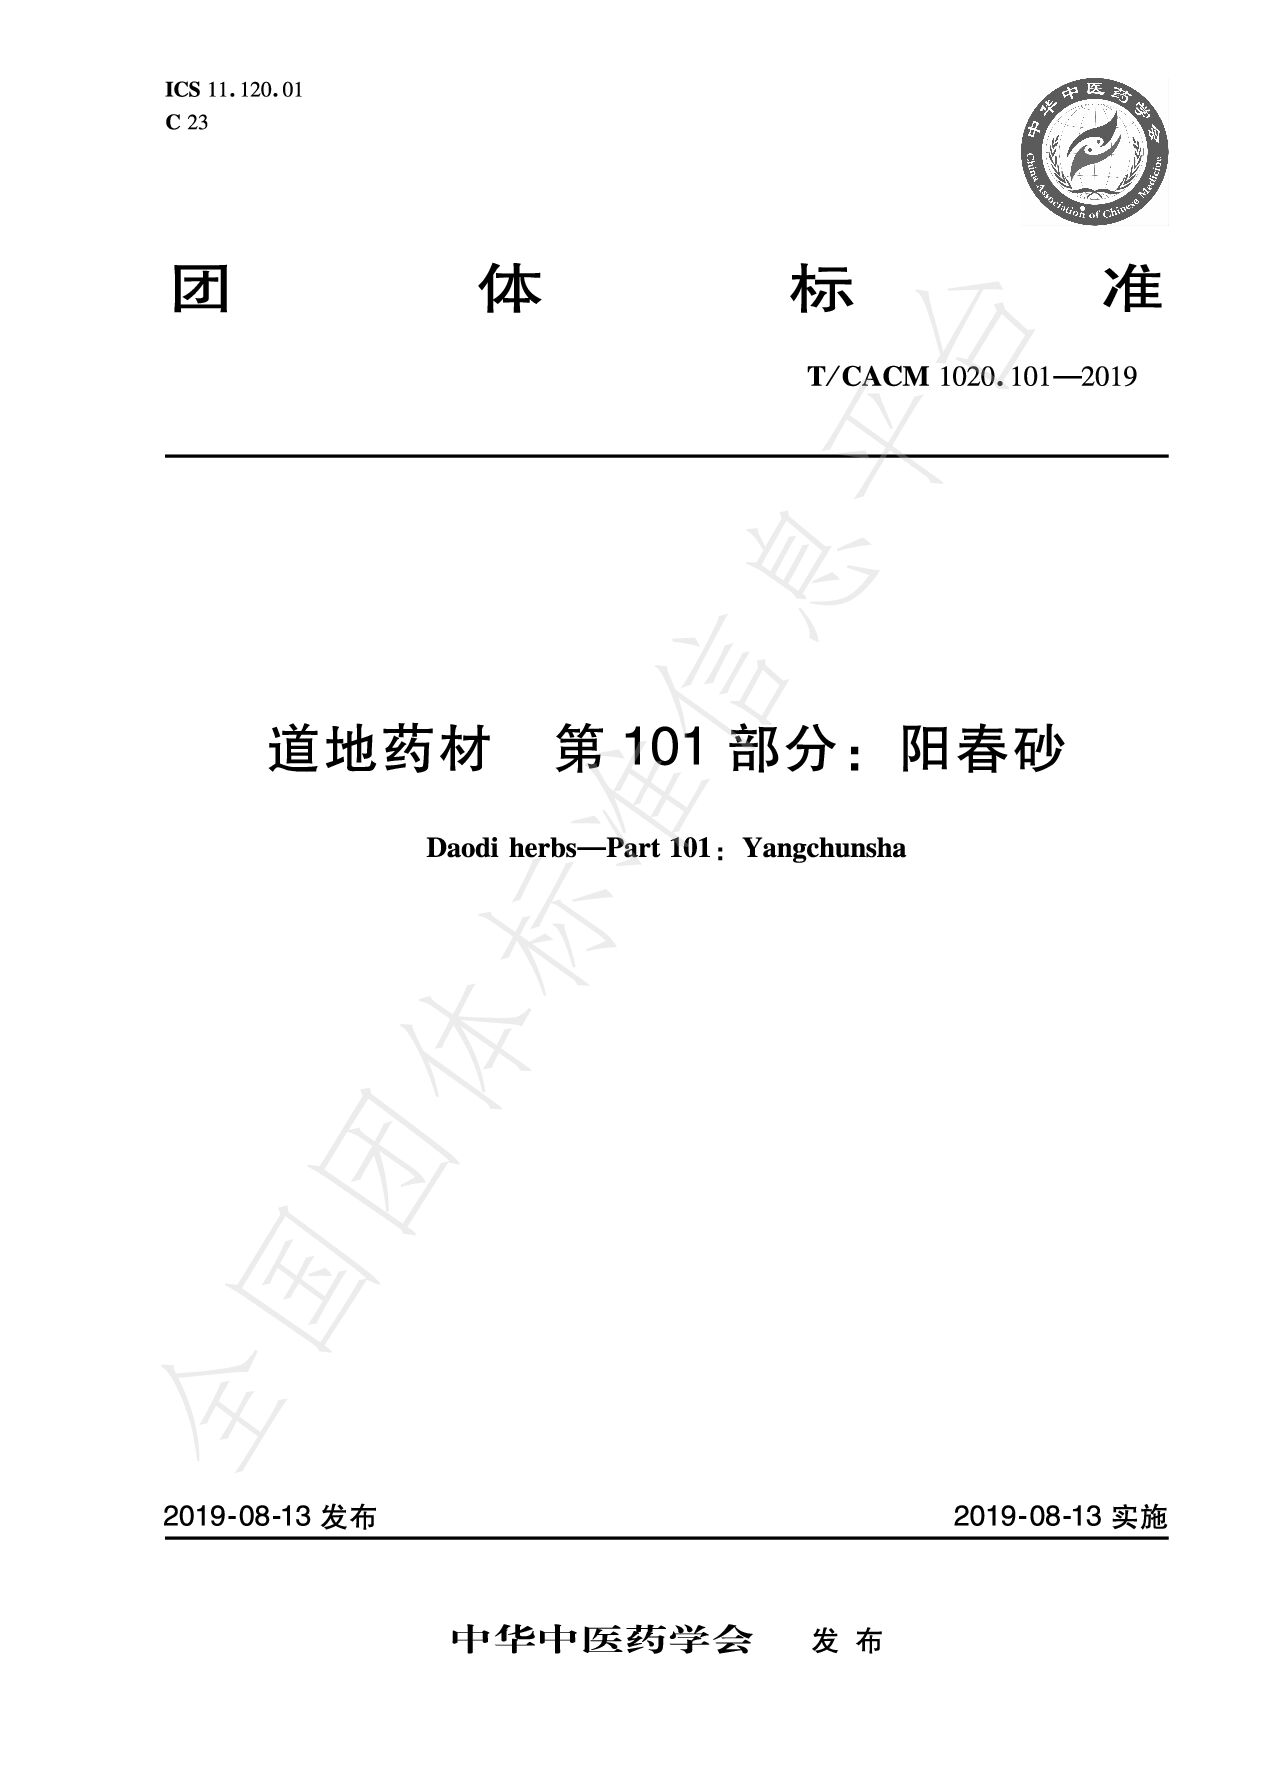 T/CACM 1020.101-2019封面图